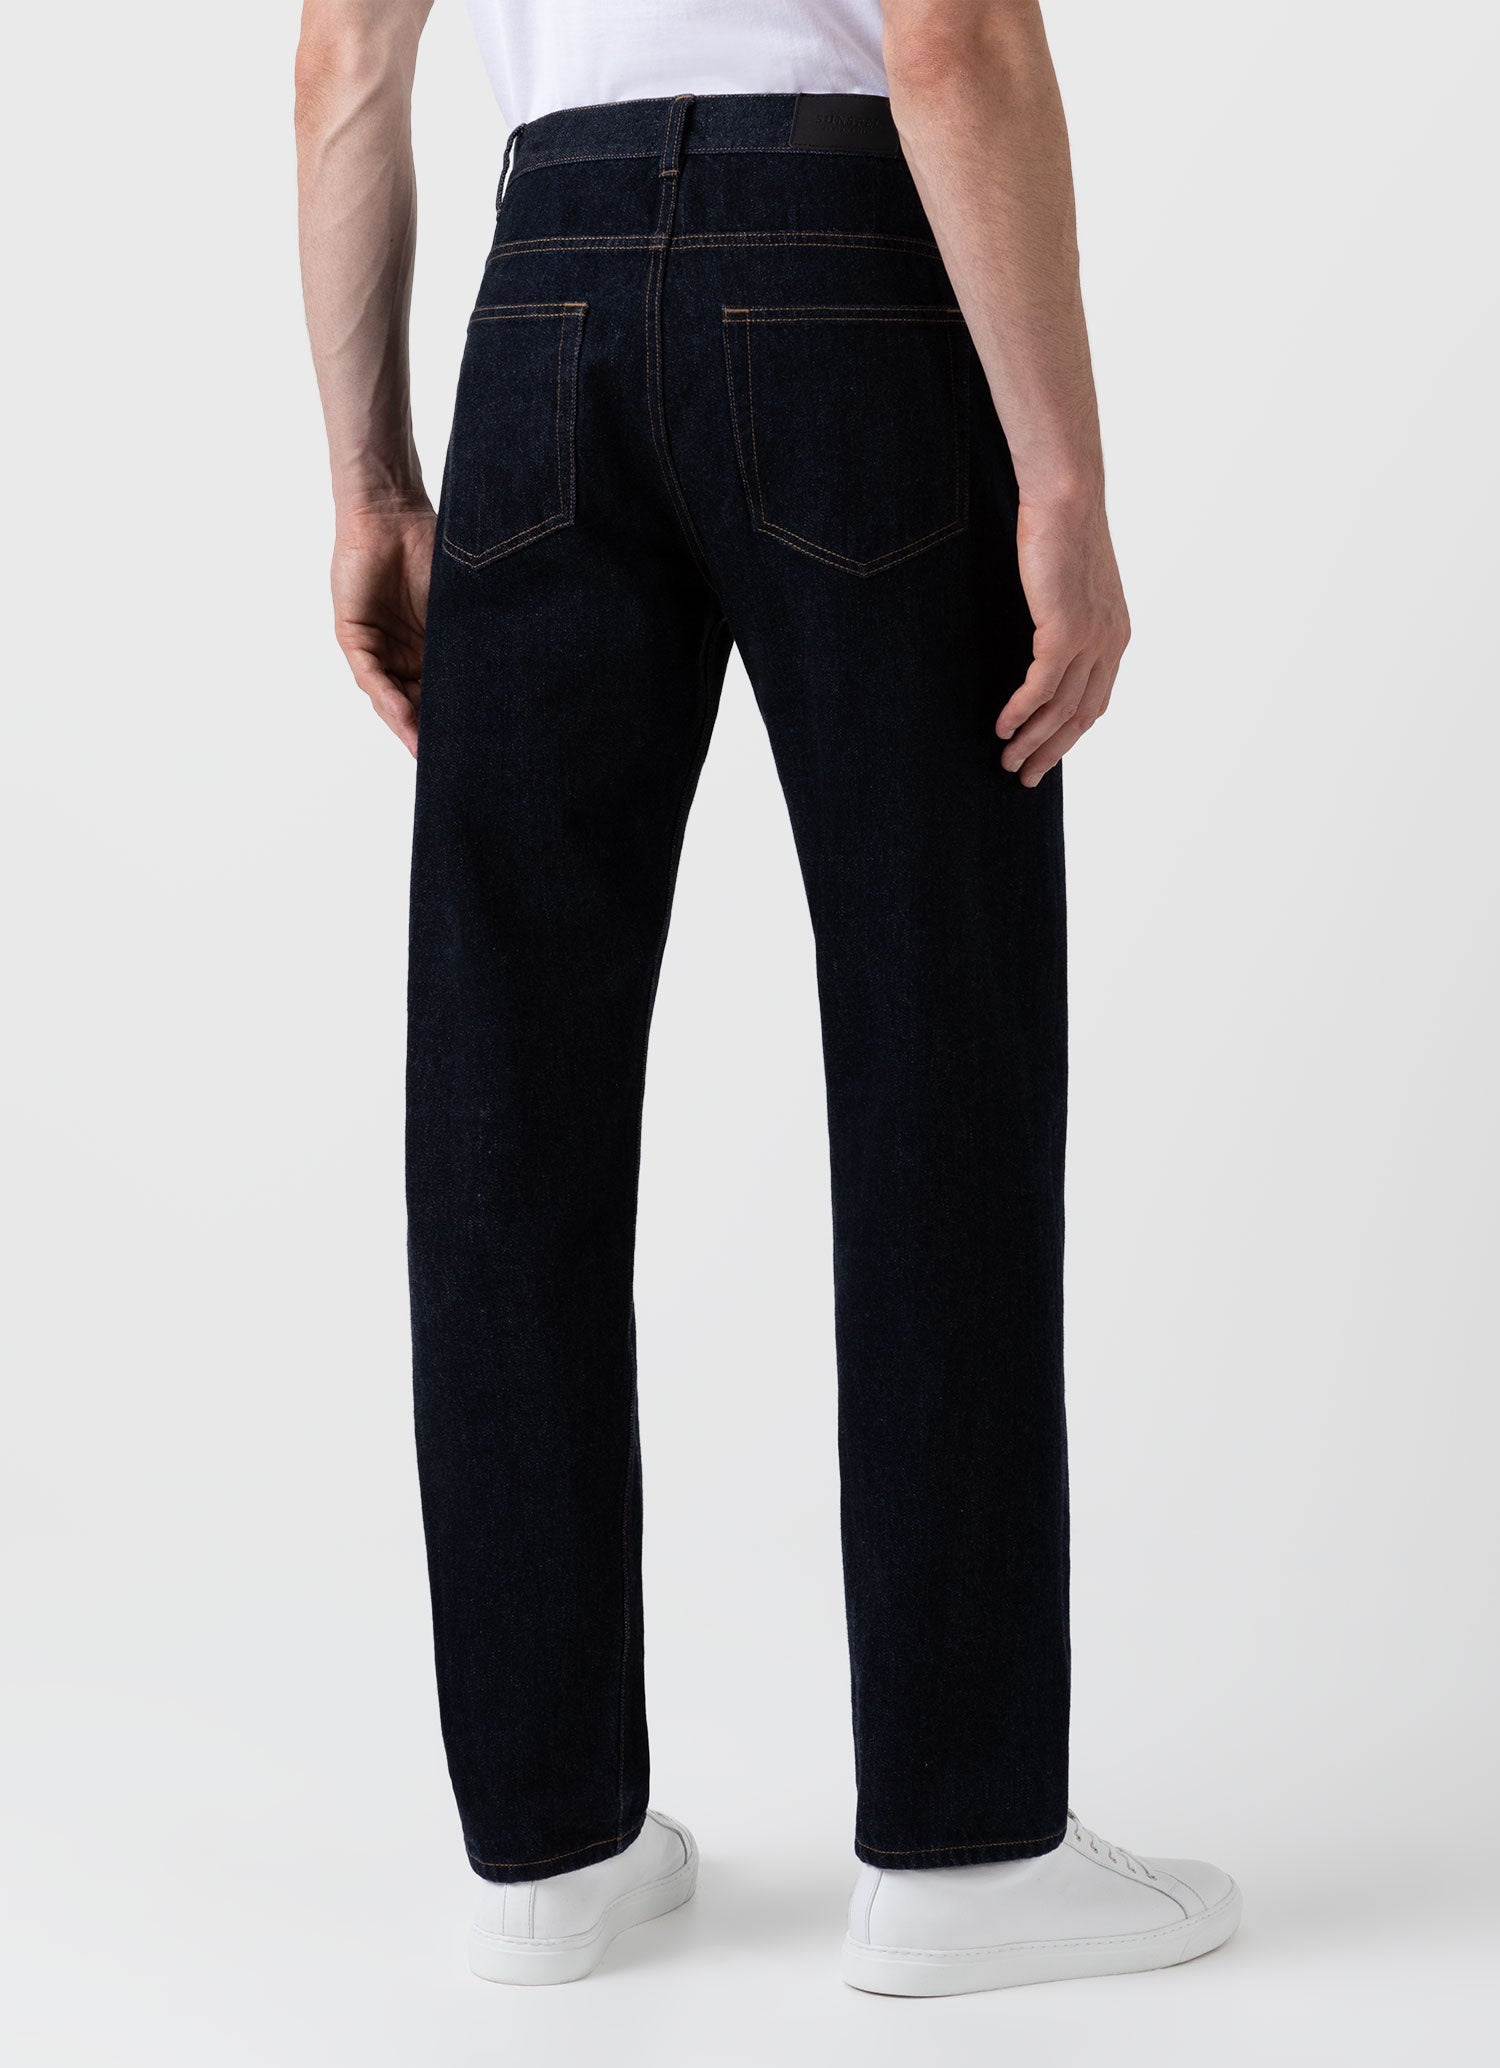 Men's 13oz Japanese Selvedge Denim Jeans in Rinse Wash Denim